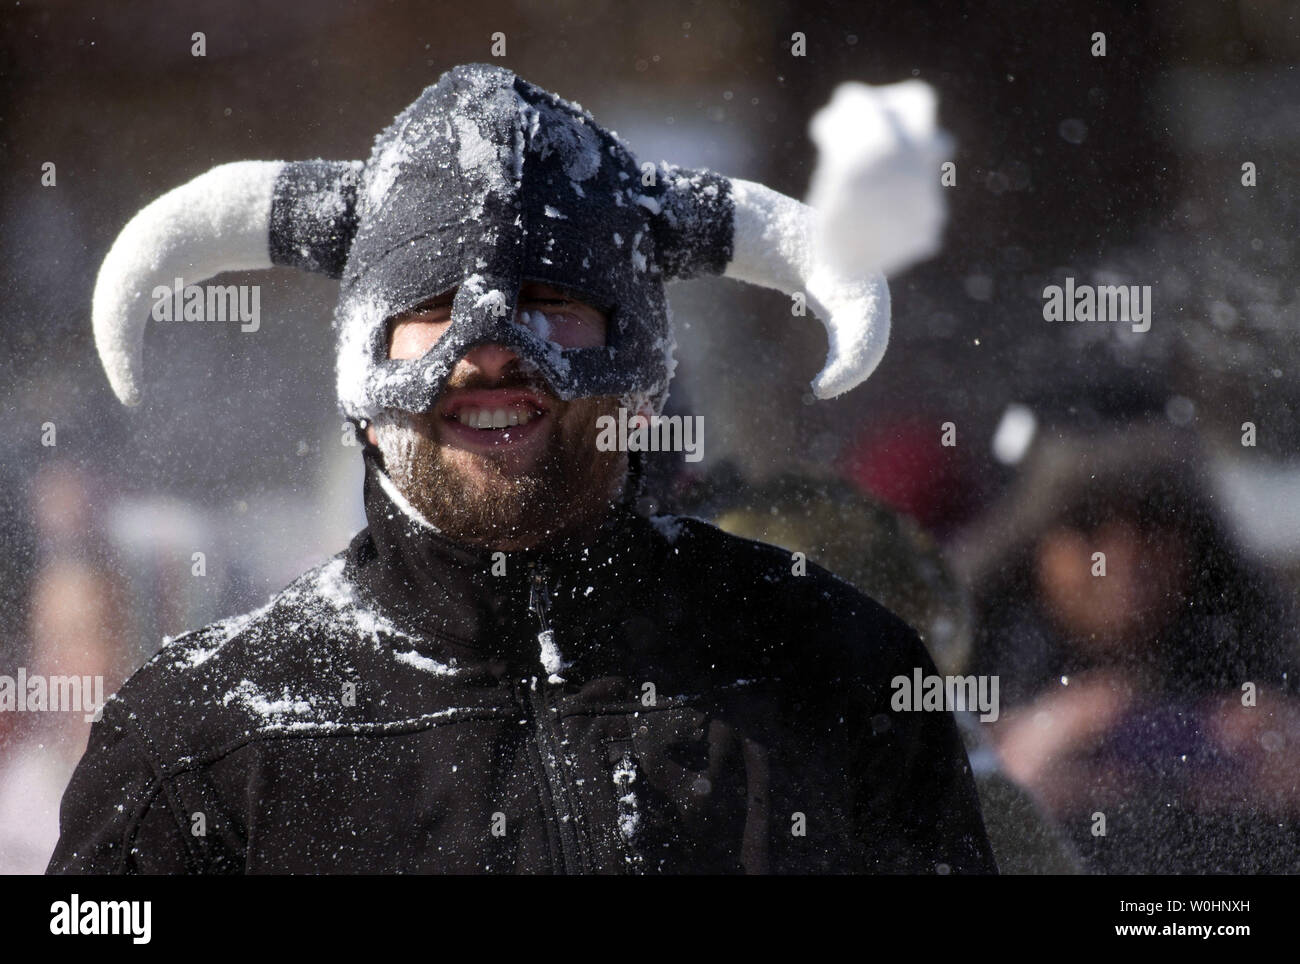 Fliegt ein Schneeball Vergangenheit ein Mann in einem Viking hat als er an einer großen Schneeballschlacht auf Social Media organisiert wird, in Meridan Hill Park in Washington, D.C., 17. Februar 2015. Der Präsident Tag Schnee Sturm gesunken 3-6 Zoll Schnee auf der D.C. Region. Foto von Kevin Dietsch/UPI Stockfoto